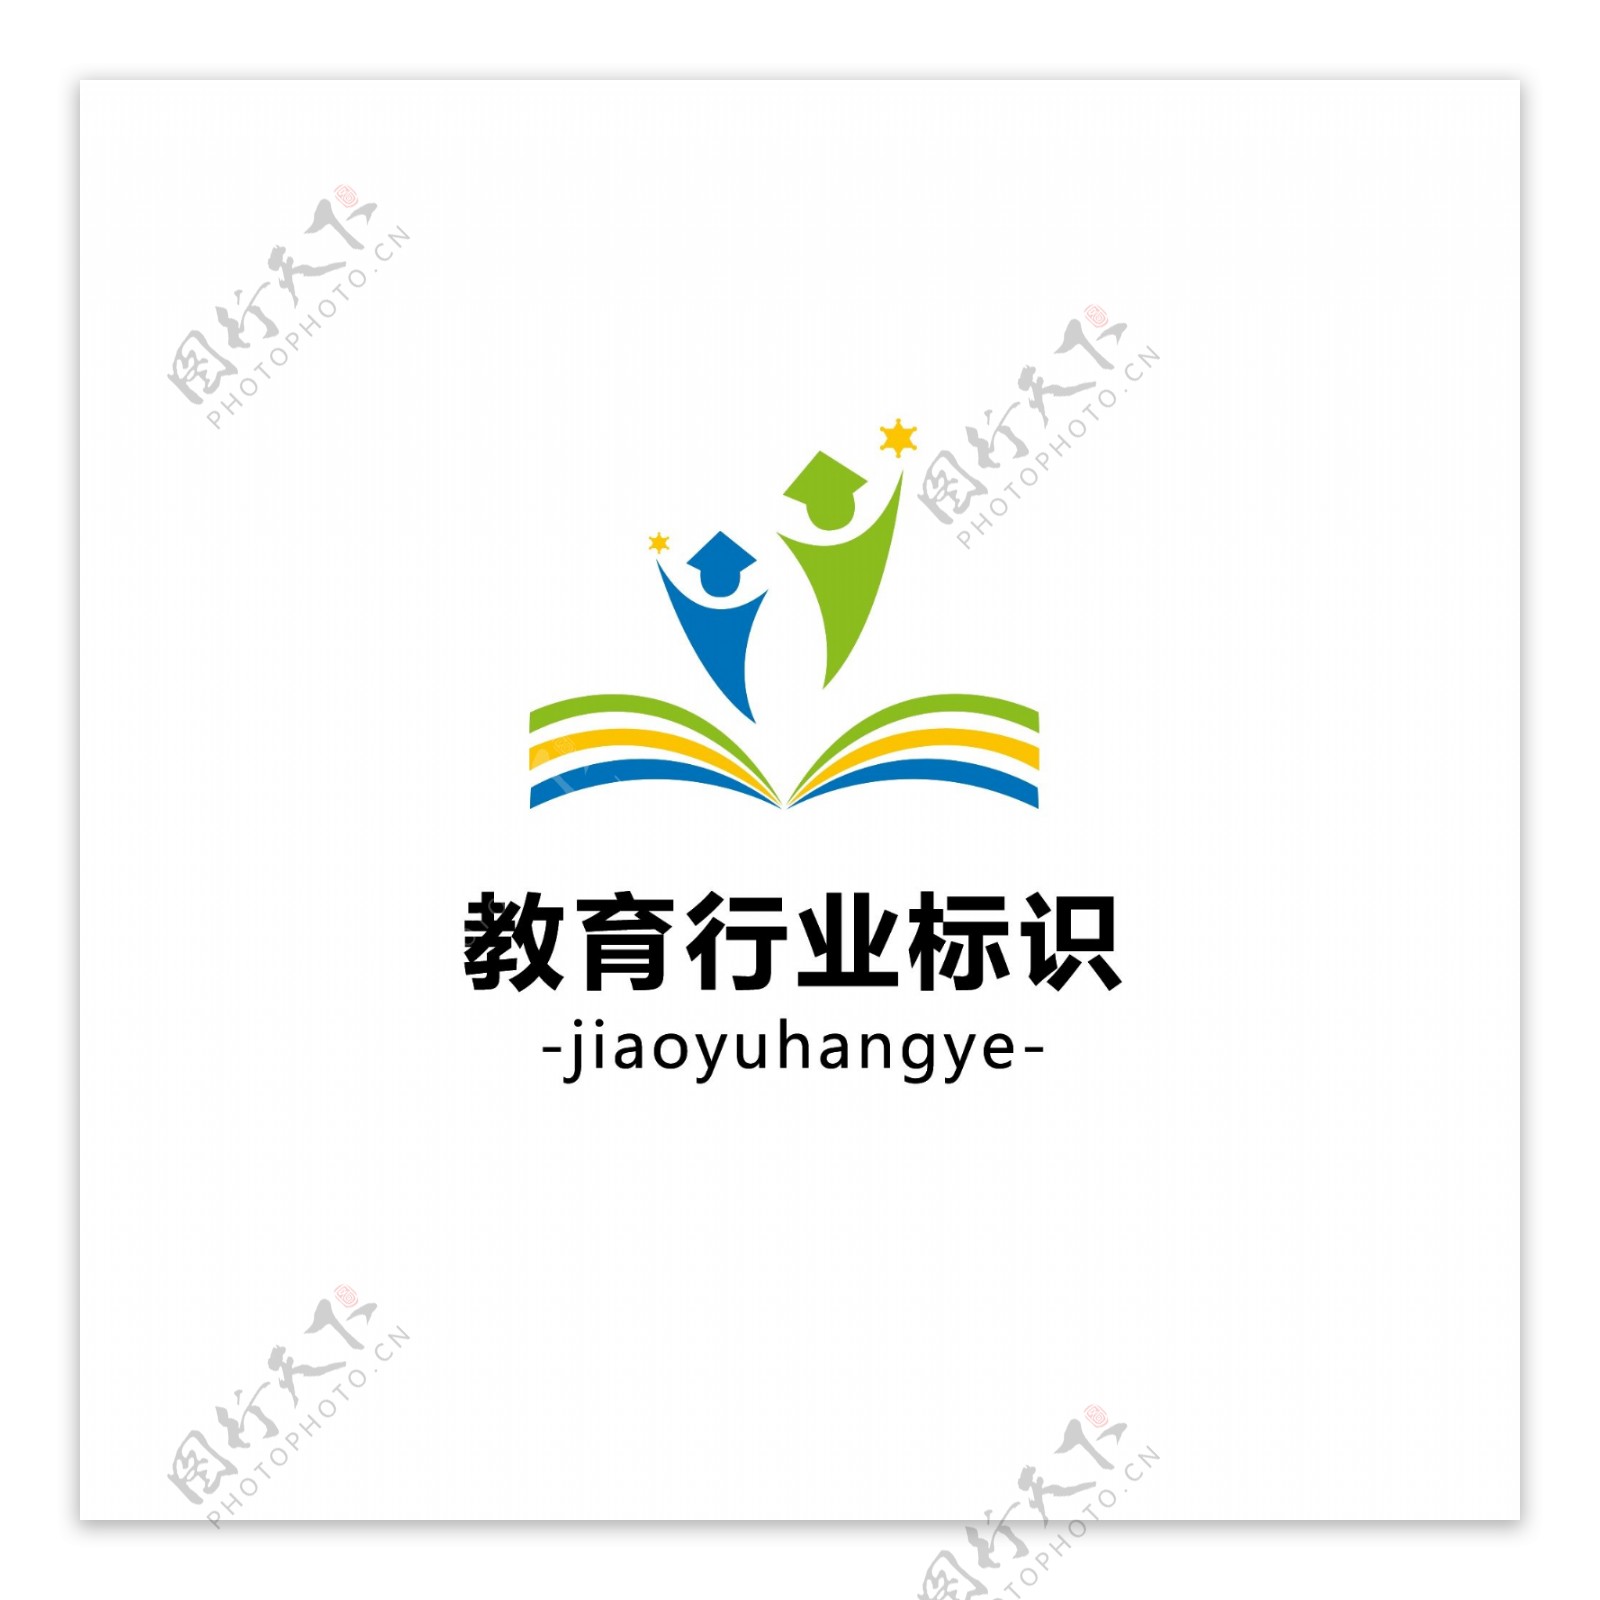 教育行业logo标识